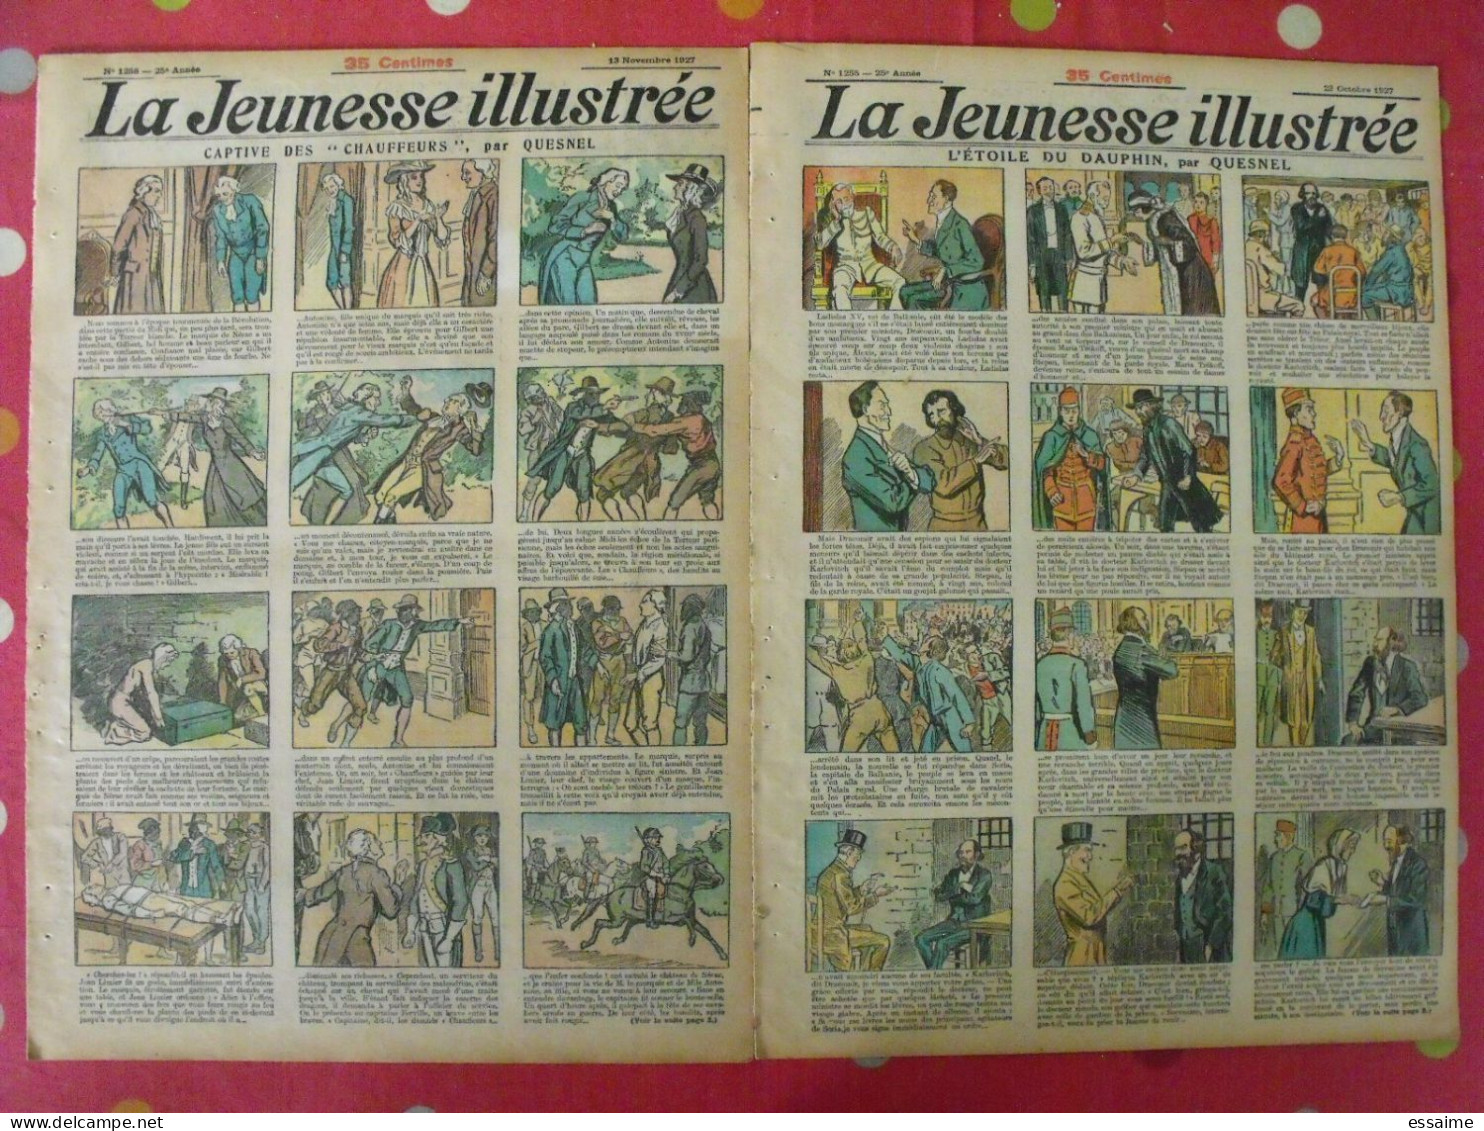 12 n° de La Jeunesse illustrée de 1928. à redécouvrir